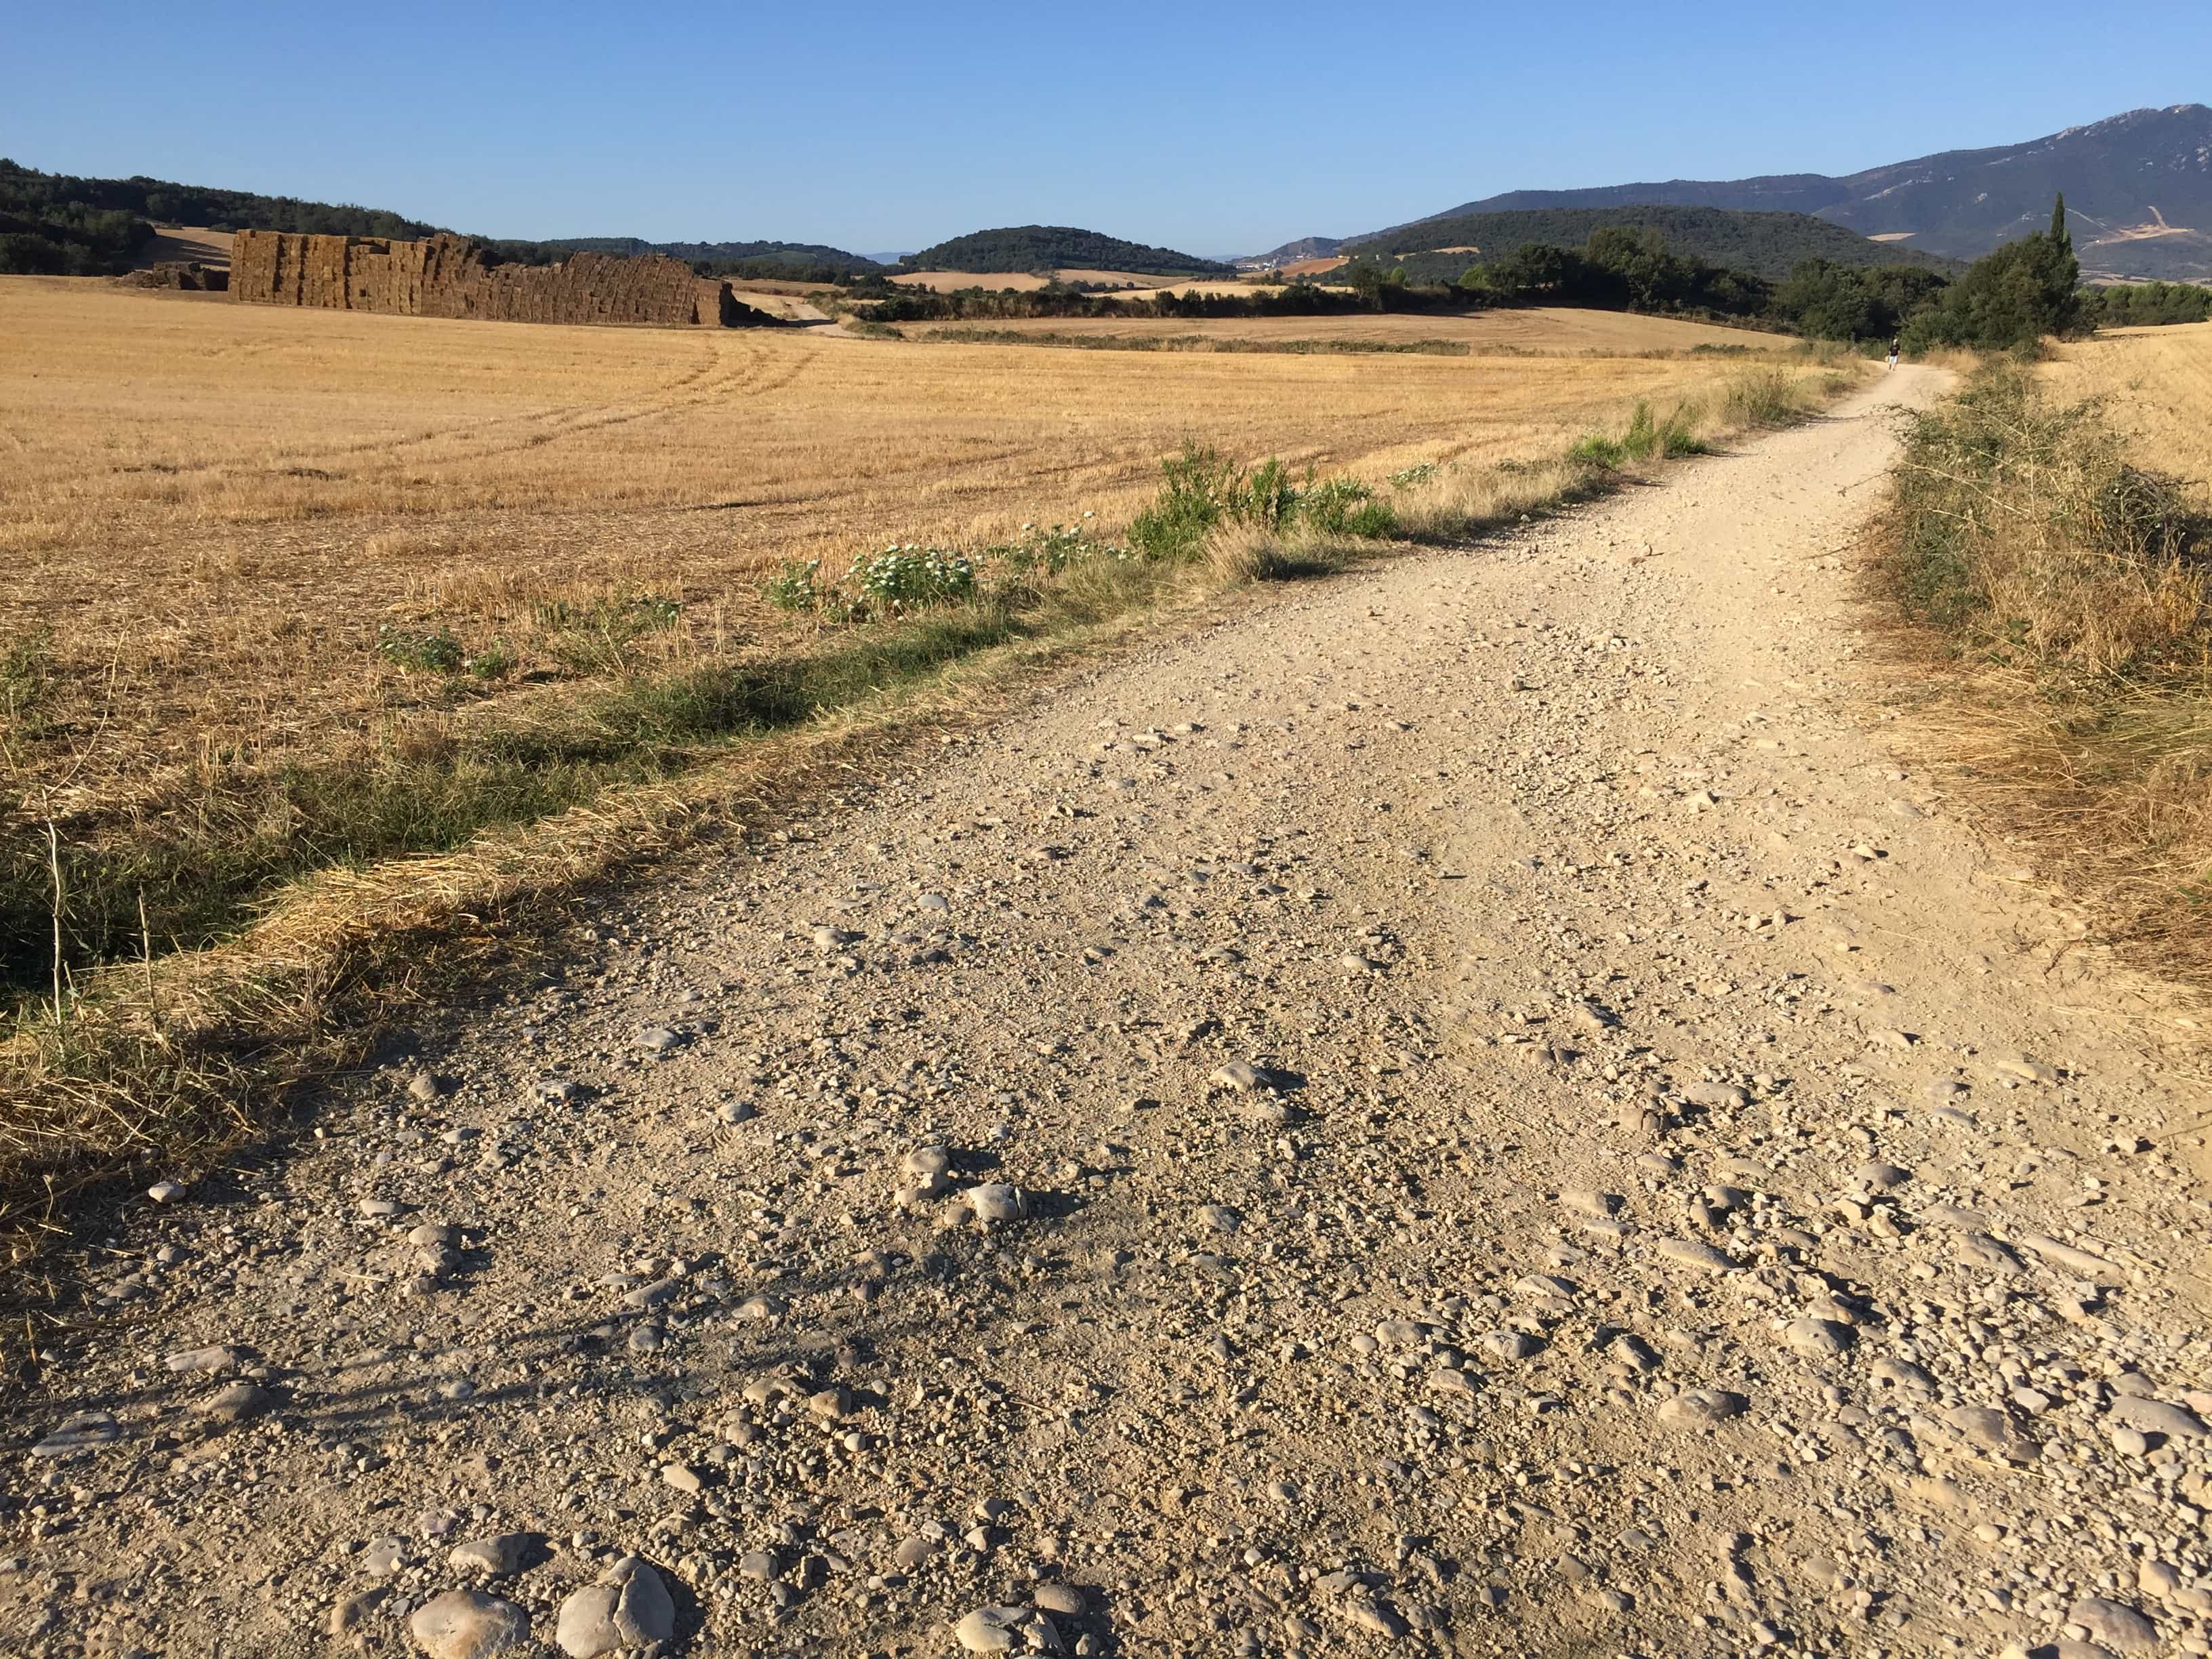 The way: Valle de yerri